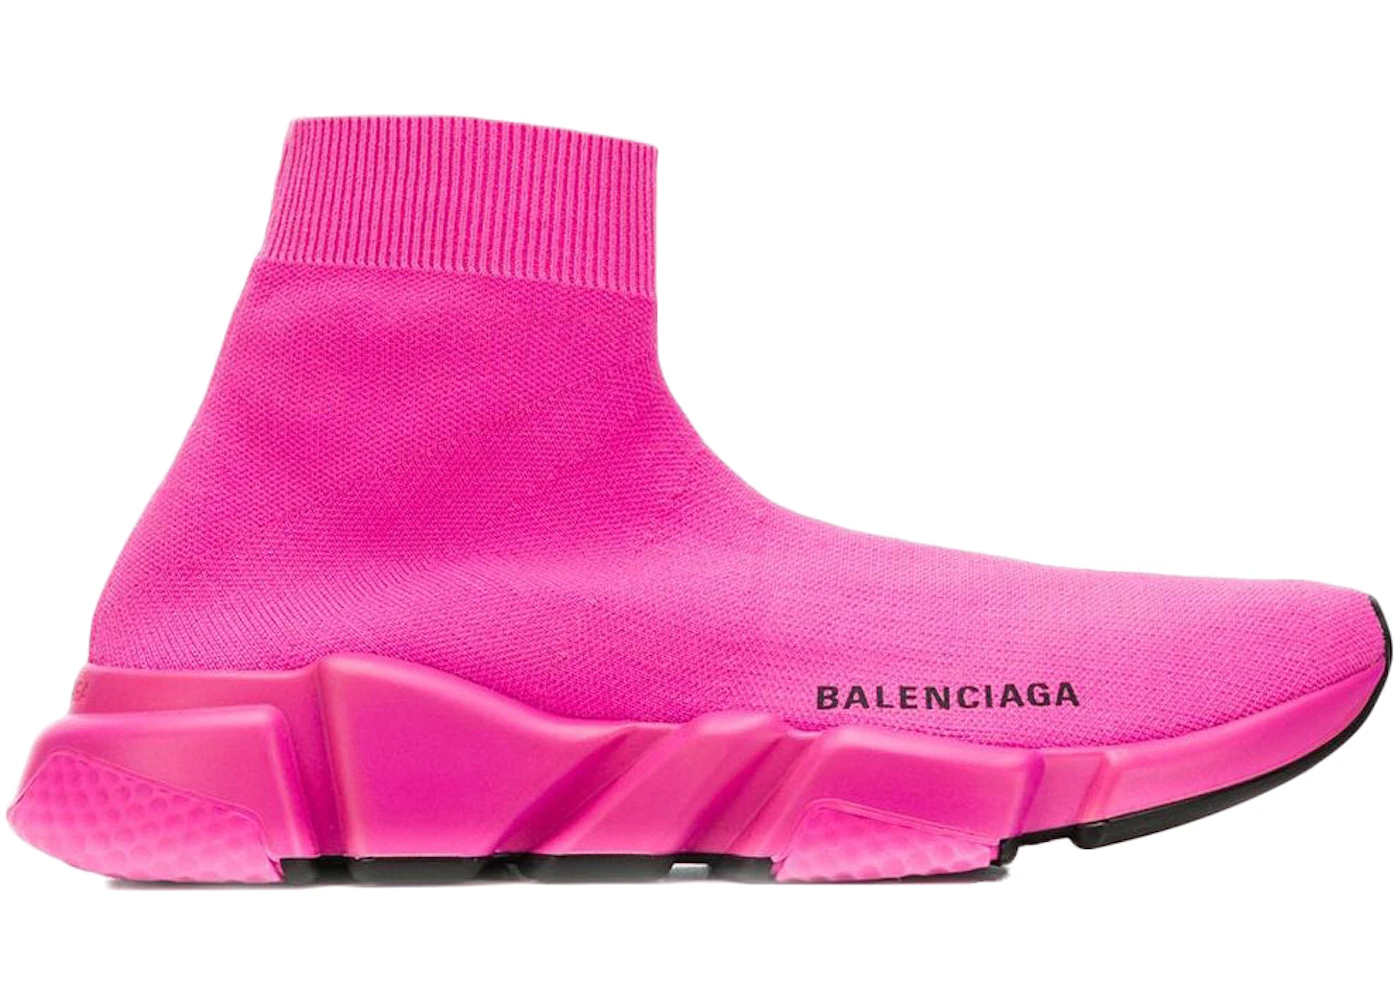 Balenciaga Speed Trainer Pink Black Sole (Women's) - 525712W05G0 - US